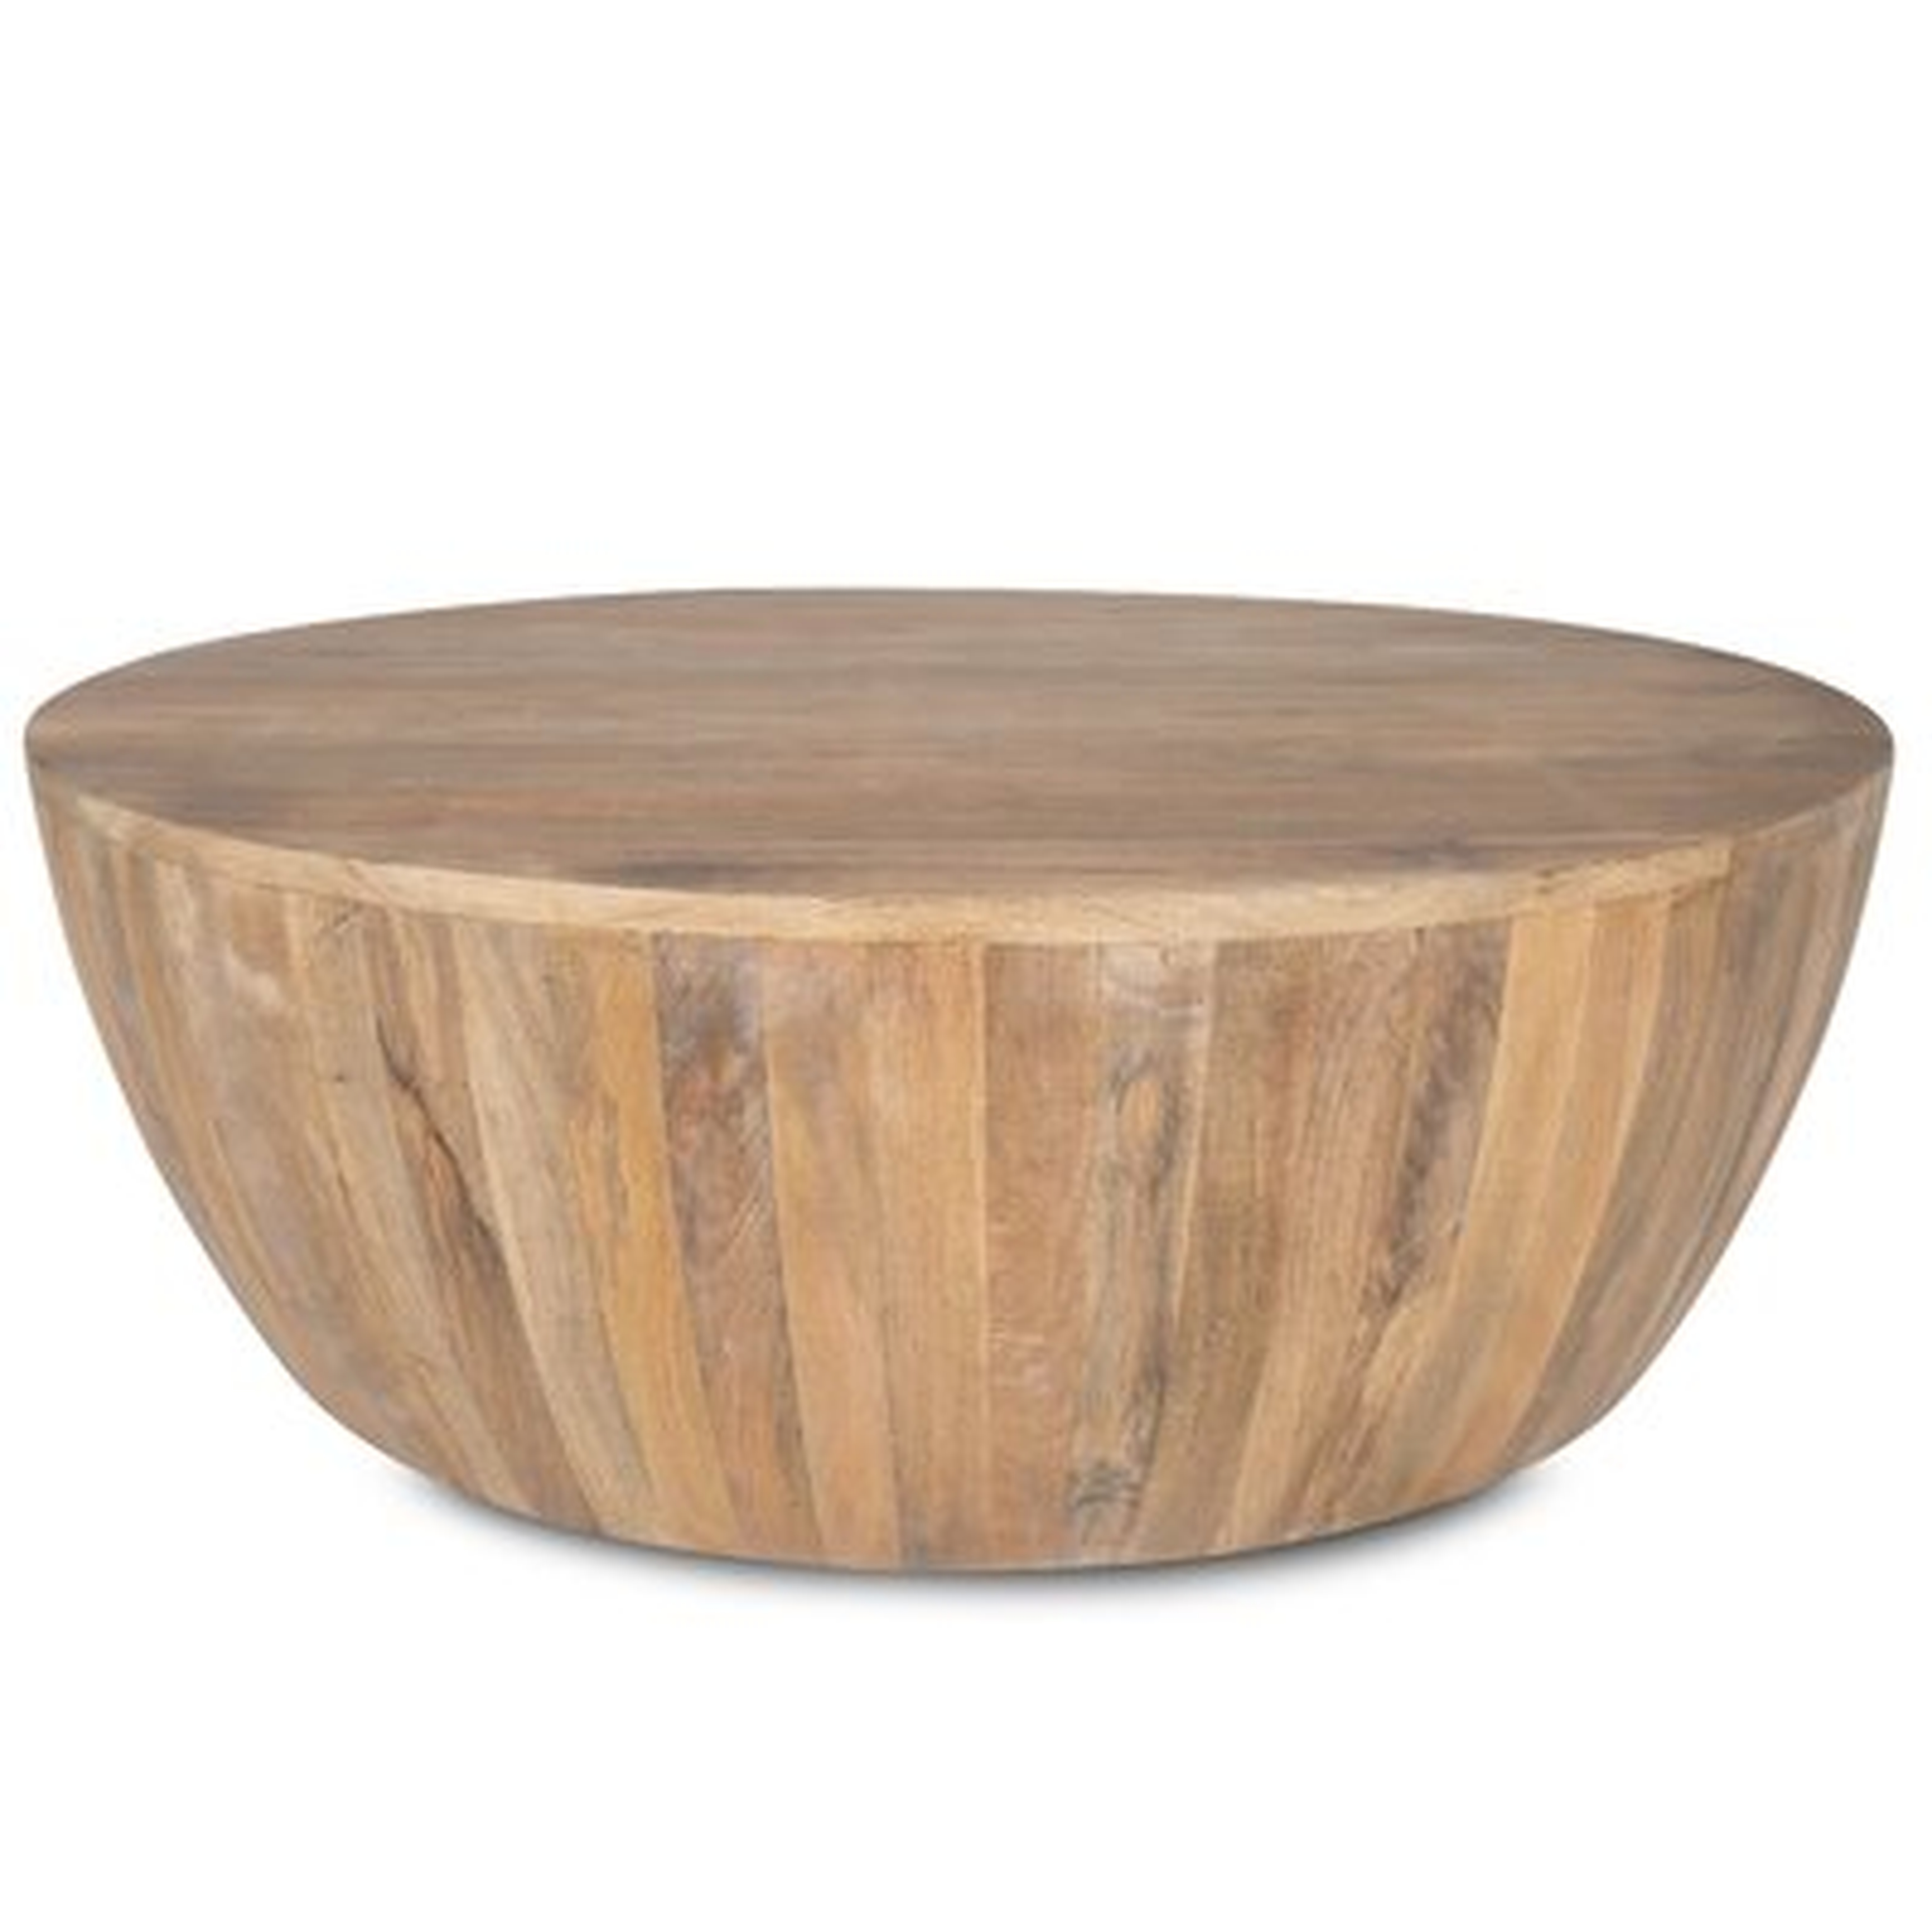 Vivienne Solid Wood Drum Coffee Table, Natural - Wayfair